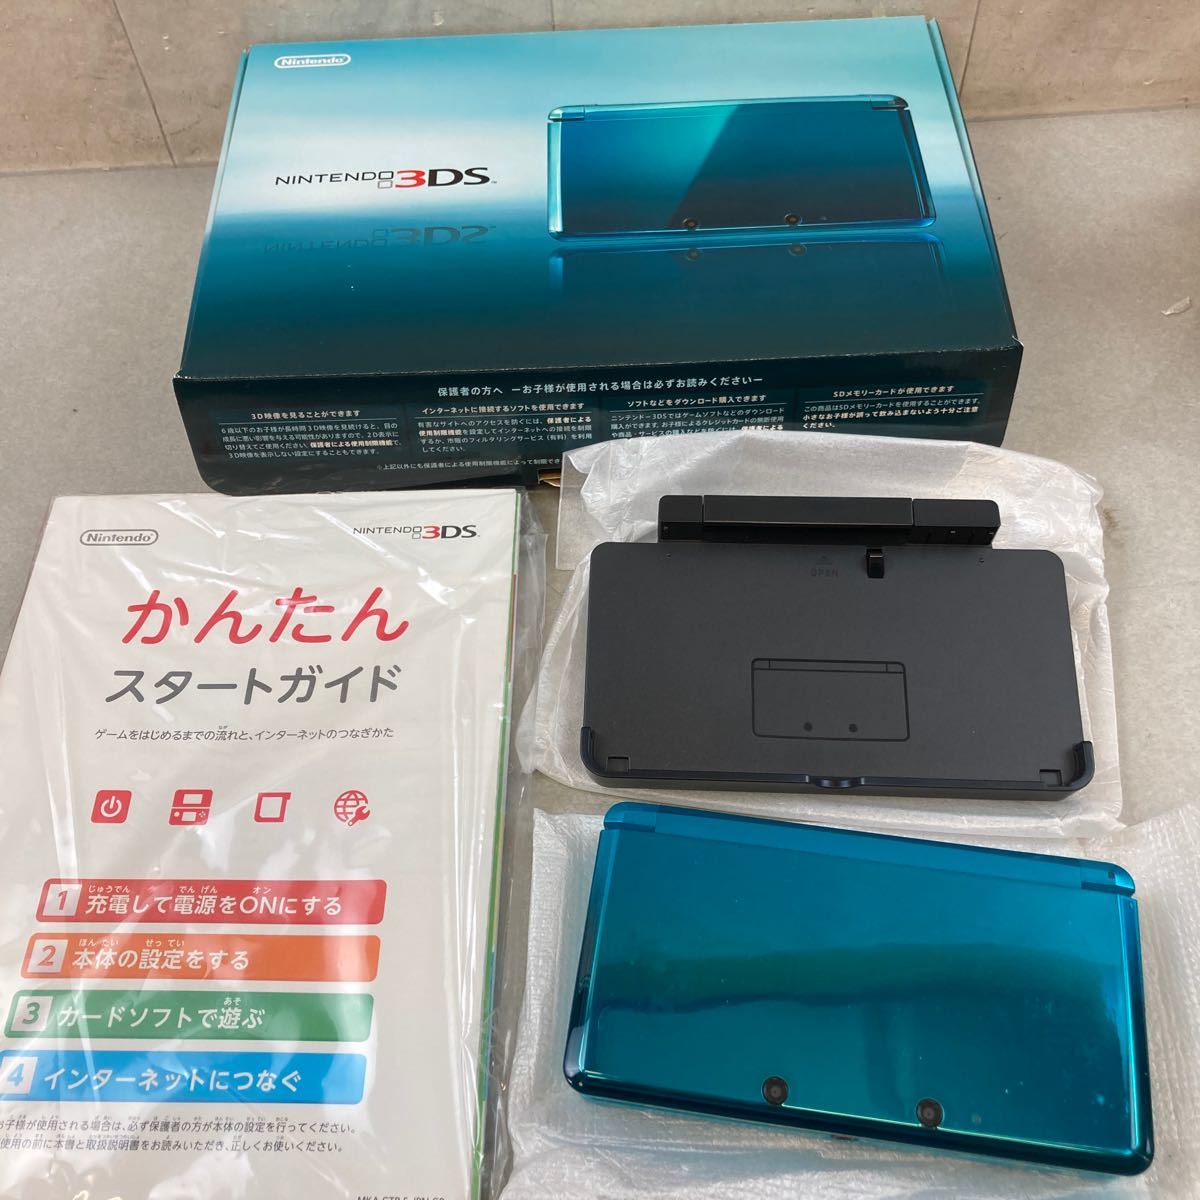 306】任天堂 ニンテンドー 3DS本体 アクアブルー ゲーム機 説明書 箱